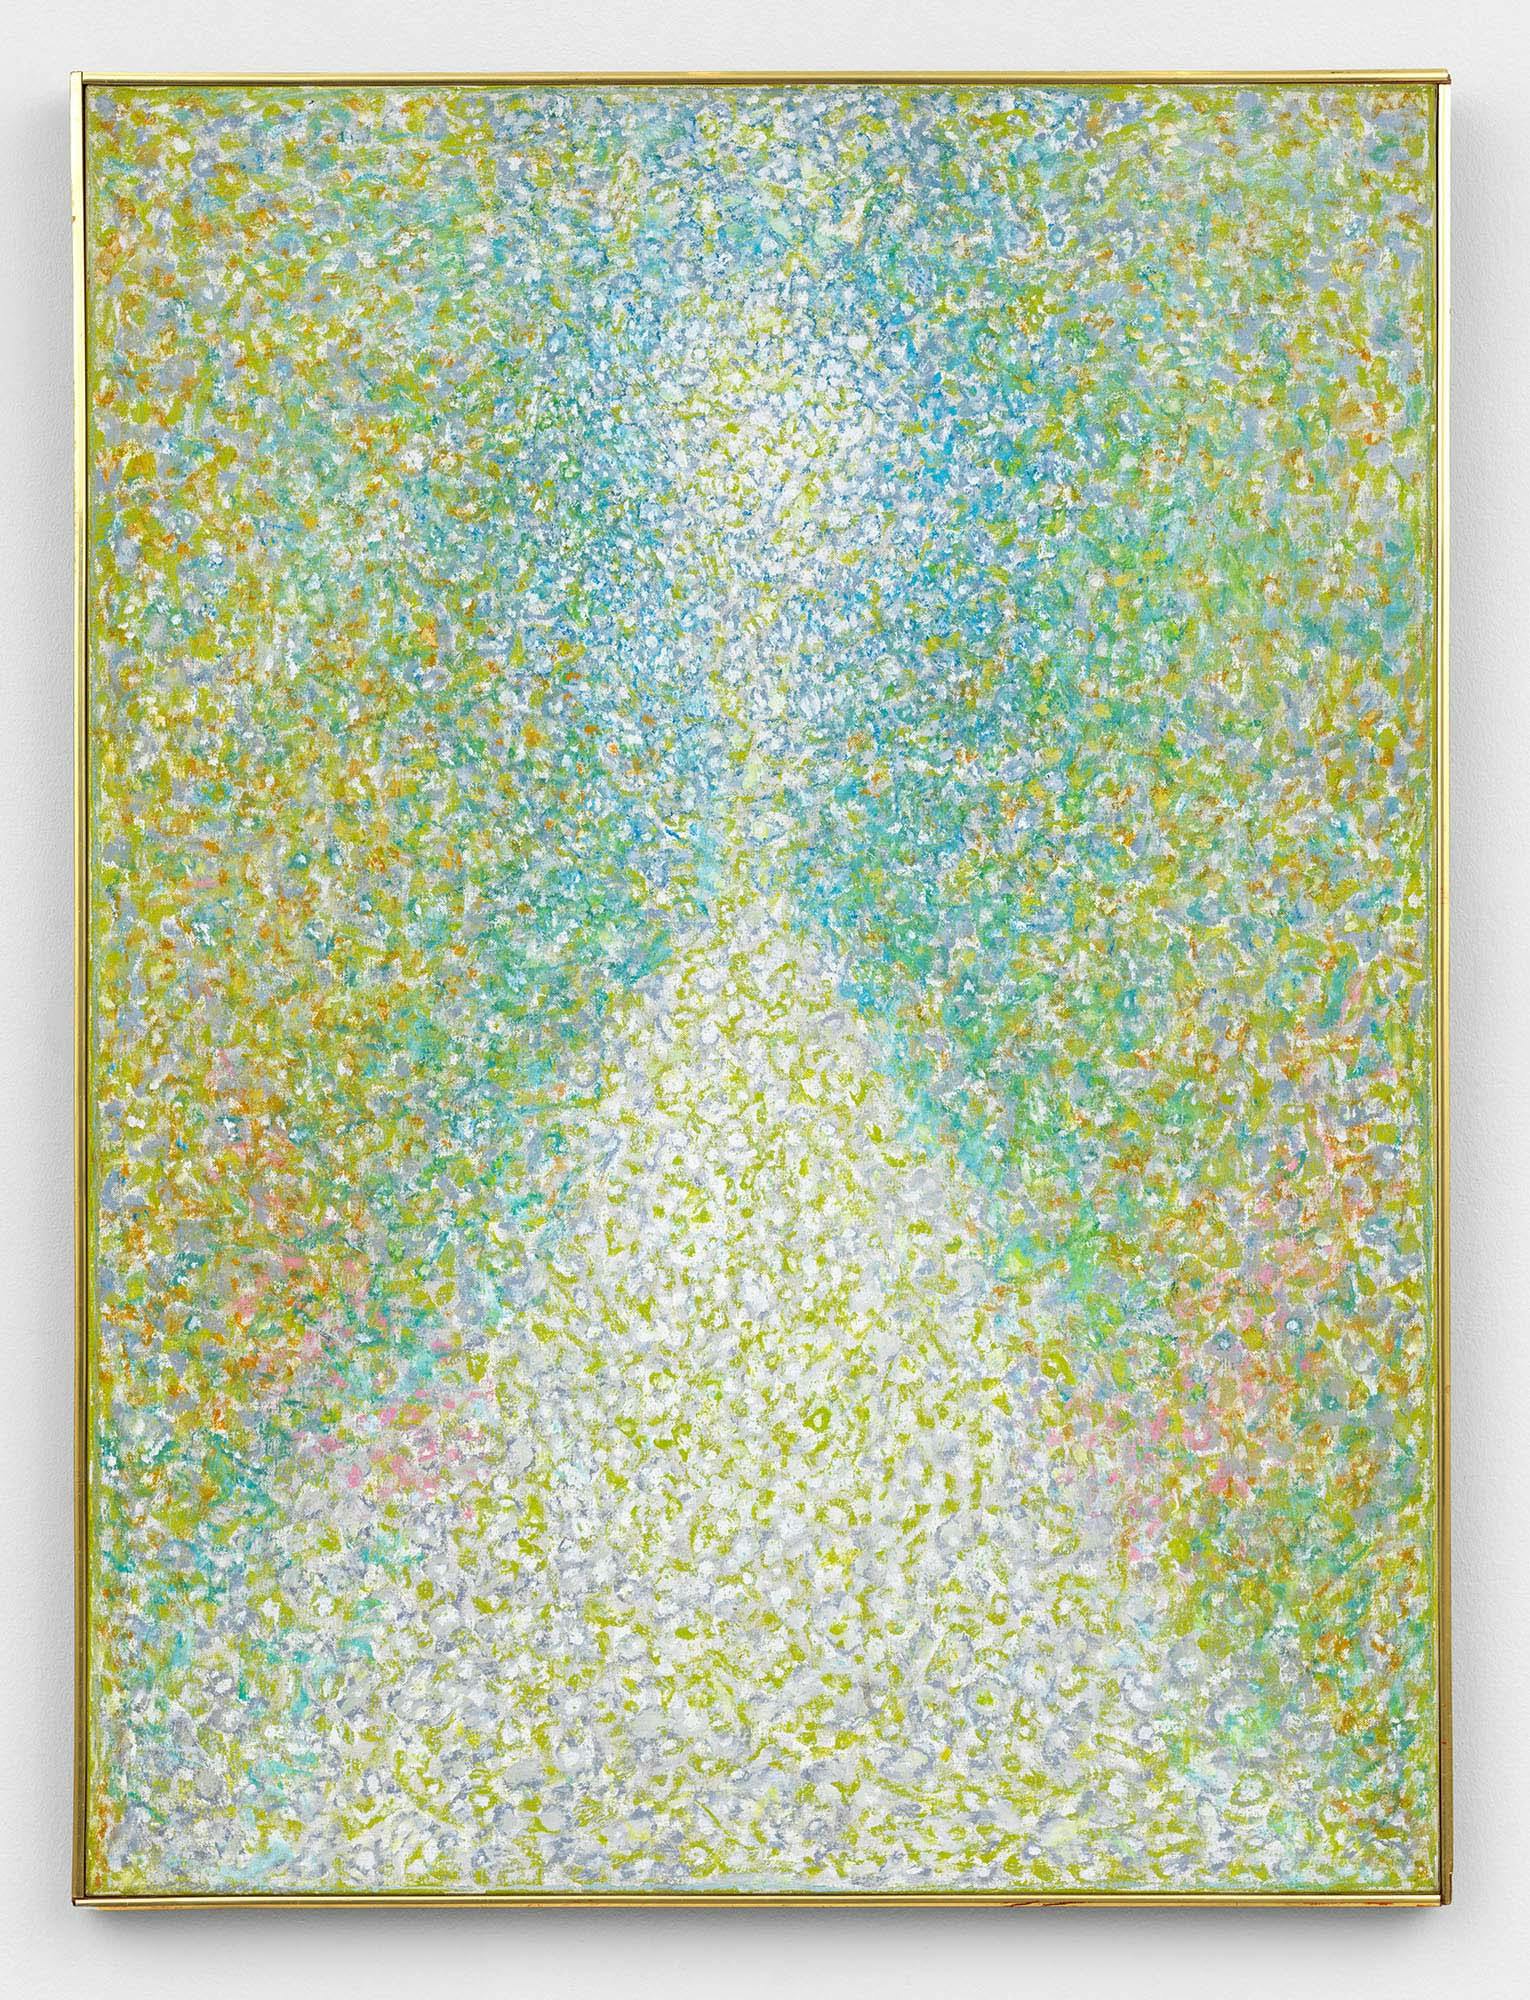 Summer Presence
1965
Oil on linen
40 x 30 in. (101.6 x 76.2 cm)
 – The Richard Pousette-Dart Foundation